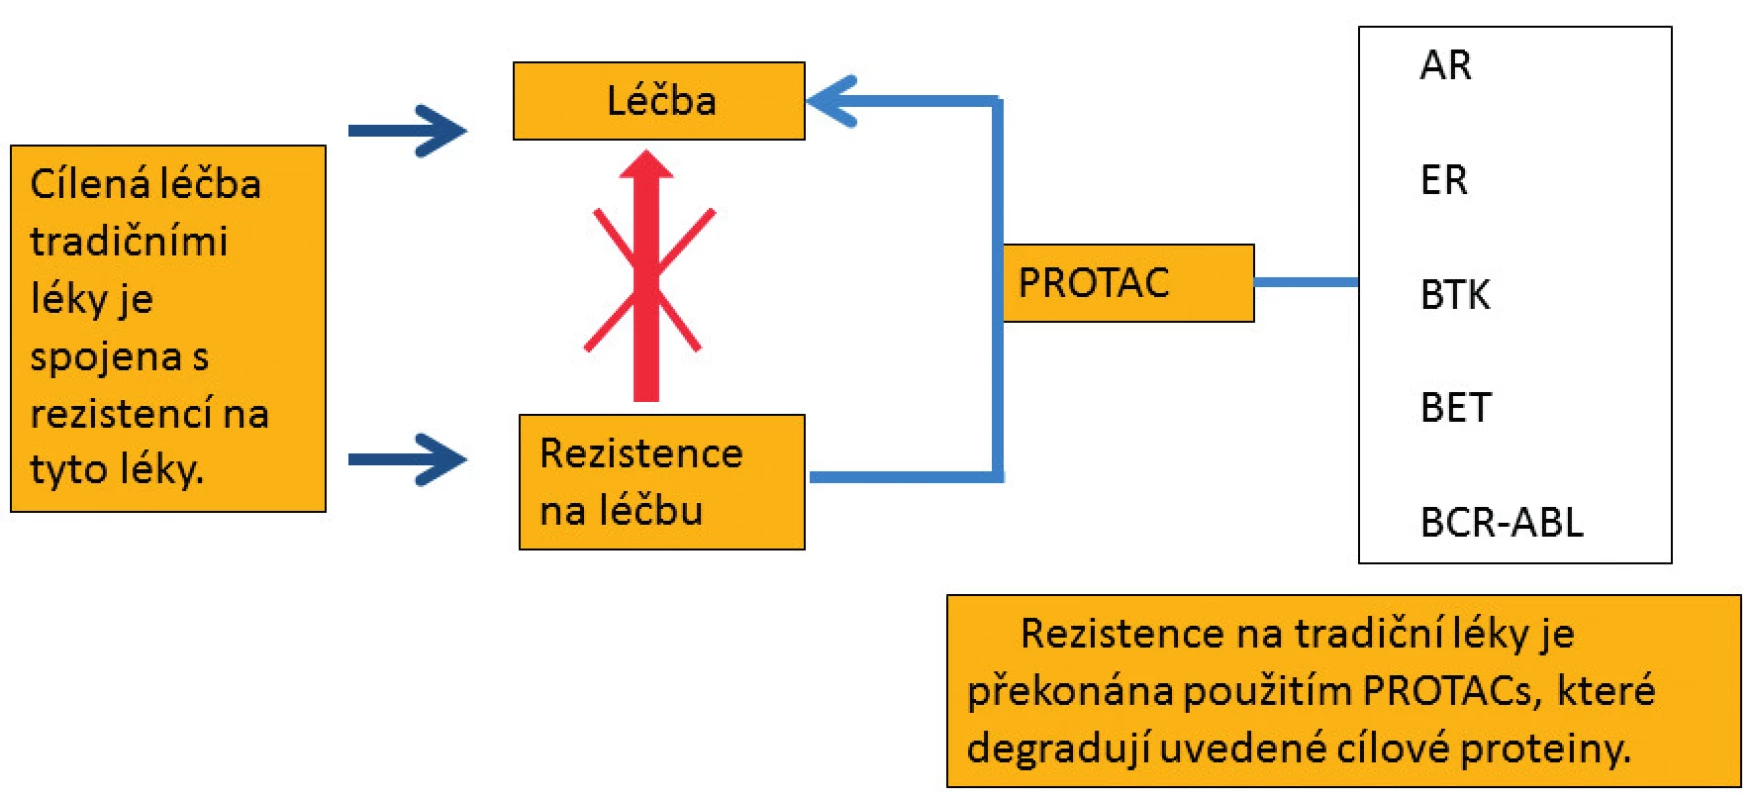 Molekuly PROTACs, které polyubikvitinují a následně degradují uvedené cílové proteiny
v proteazomu, překonávají rezistenci na tradiční léky.
AR – androgenní receptor, ER – estrogenní receptor, BTK – Brutonova tyrozinkináza, BET – proteiny
s bromo- a extraterminální doménou, BCR-ABL – fúzní onkoprotein tyrozinkináza, PROTAC – proteolysis
targeting chimera